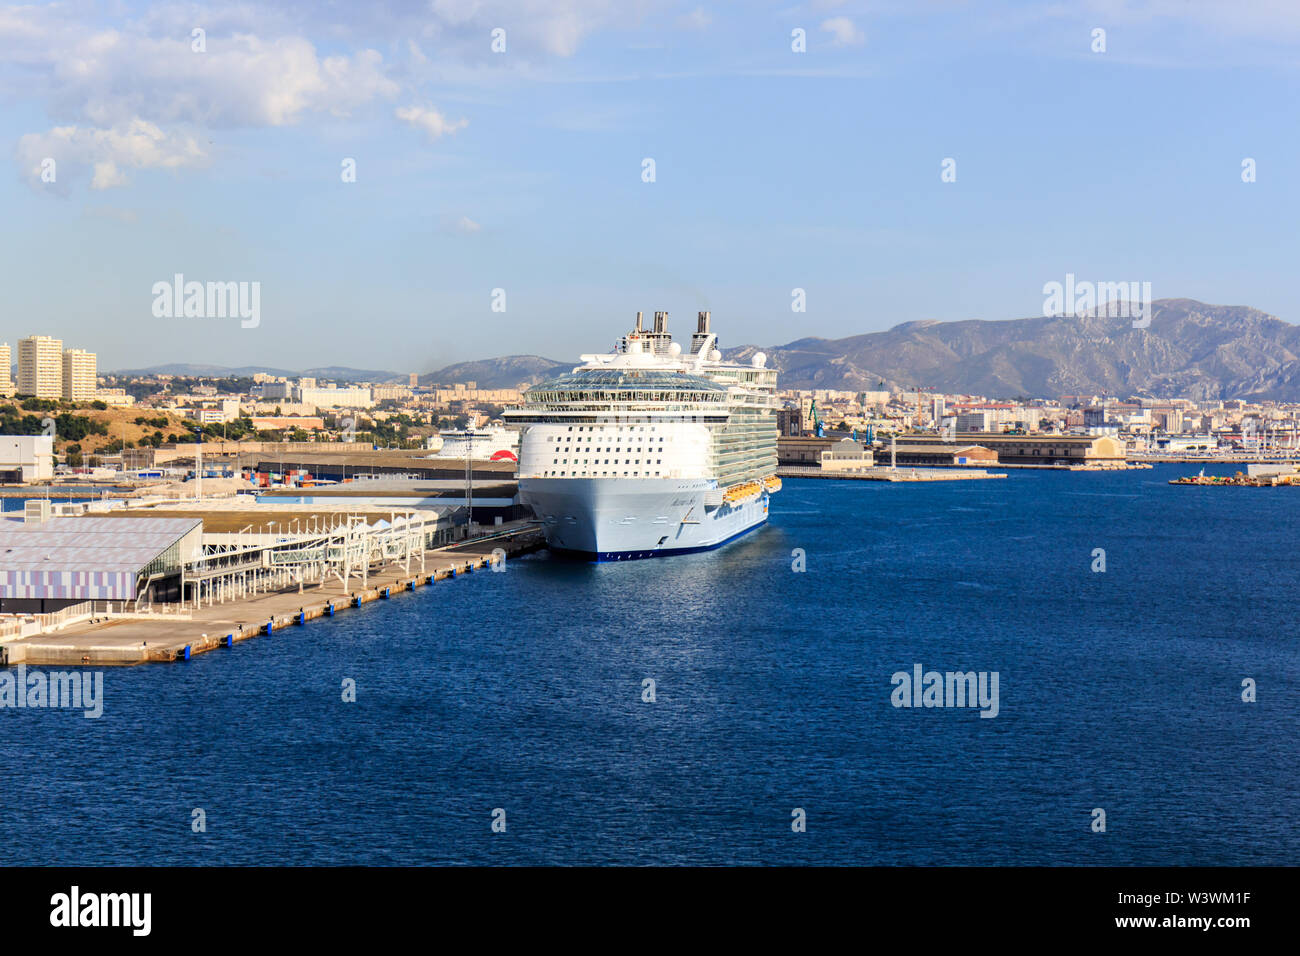 Marseille, Frankreich - 8. September 2015: Die Royal Caribbean Cruise Ship Allure of the Seas im Hafen. Die Stadt ist ein beliebtes Ziel f Stockfoto